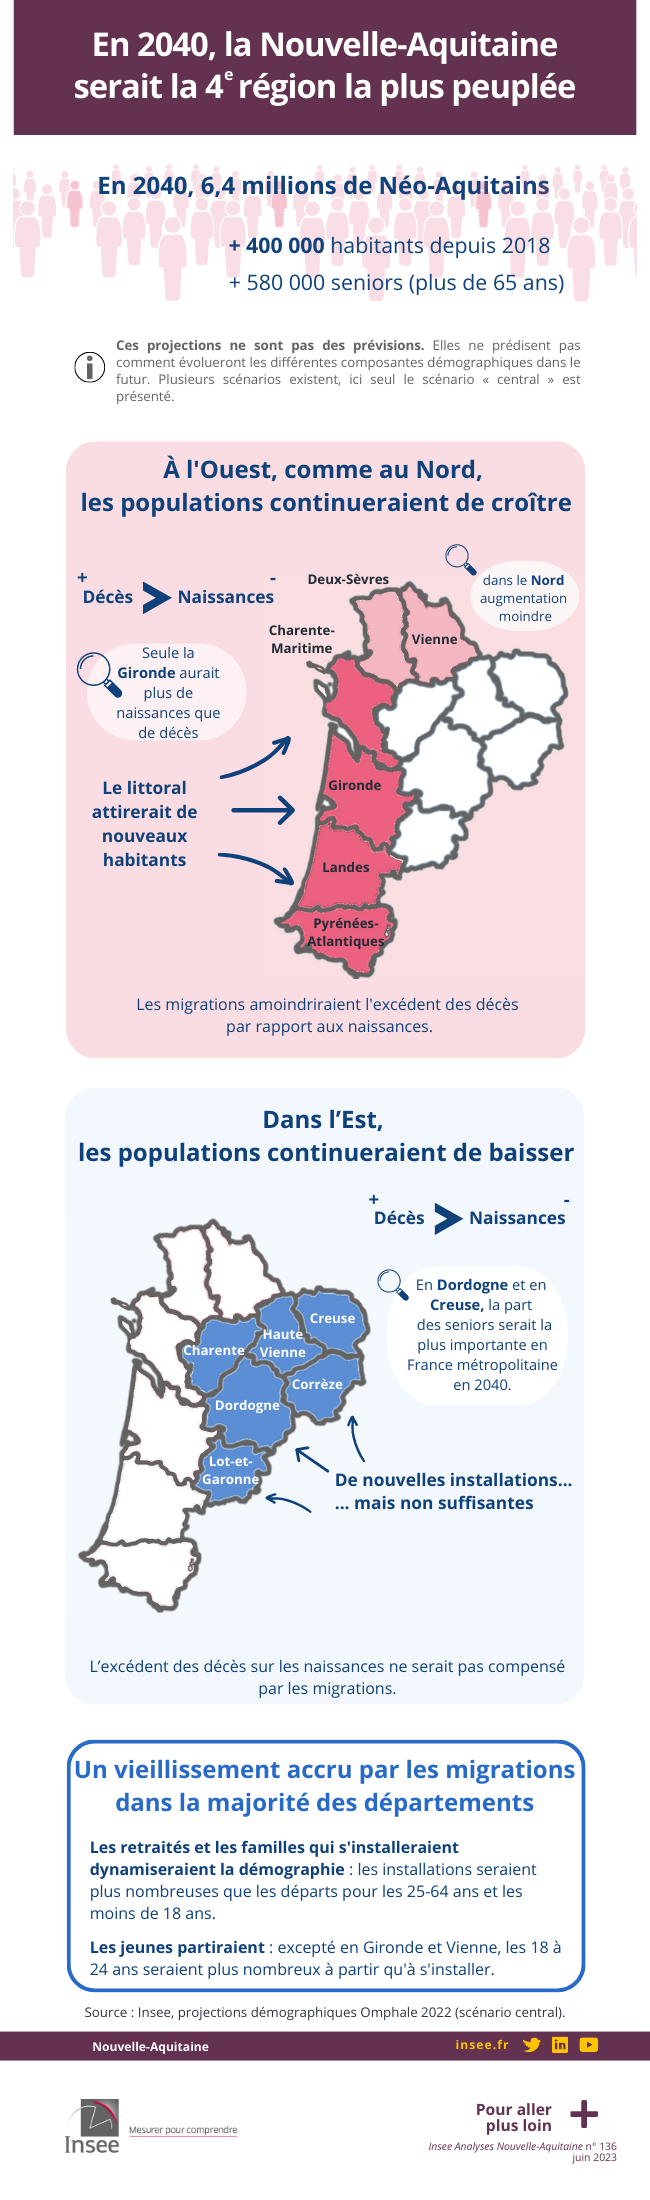 En 2040, la Nouvelle-Aquitaine serait la 4ᵉ région la plus peuplée.